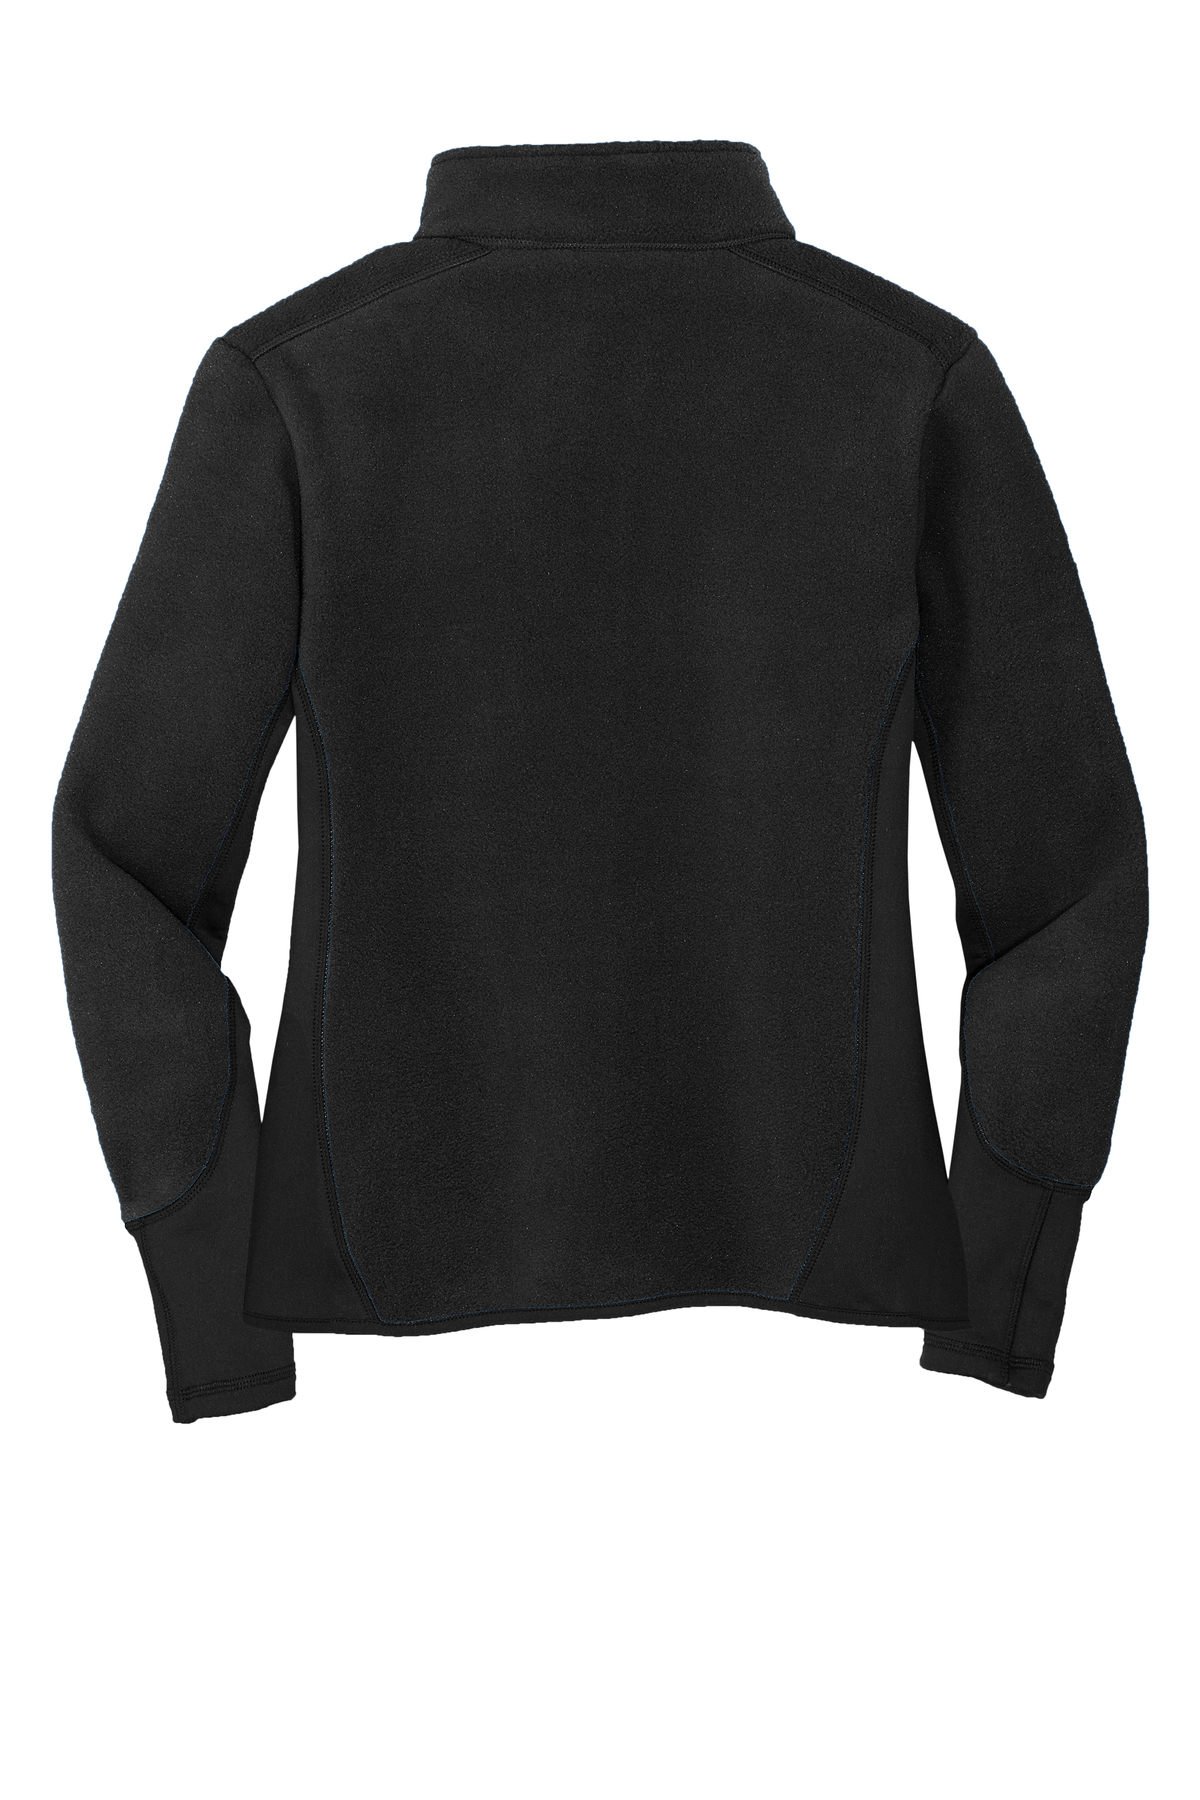 Port Authority Ladies R-Tek Pro Fleece Full-Zip Jacket | Product | SanMar